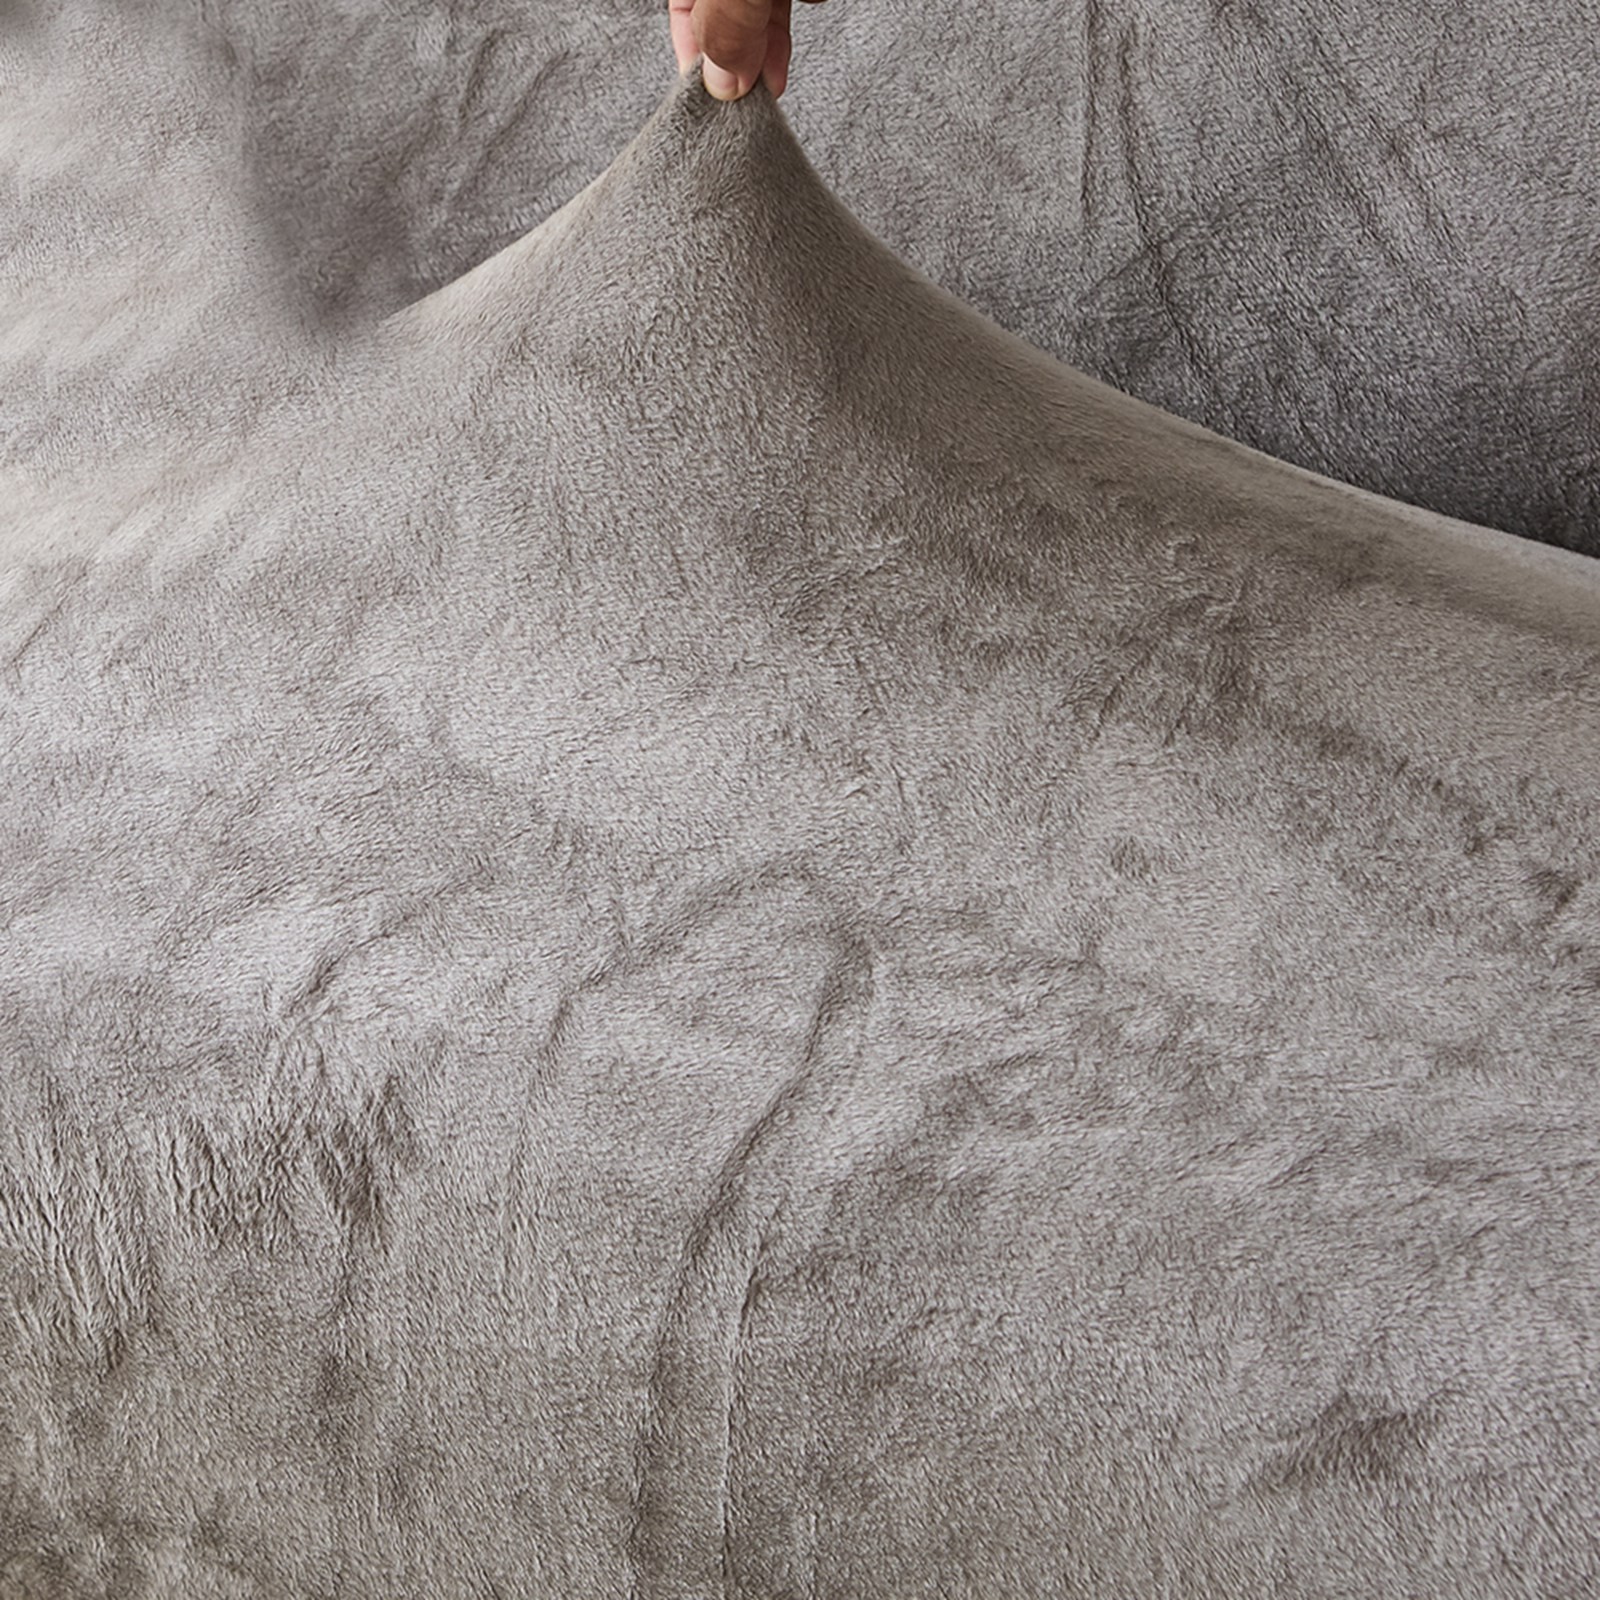 Thick Plush Futon Cover Stretch Armless Sofa Bed Slipcover Soft Couch Sofa Cover Futon Slipcover - image 5 of 5